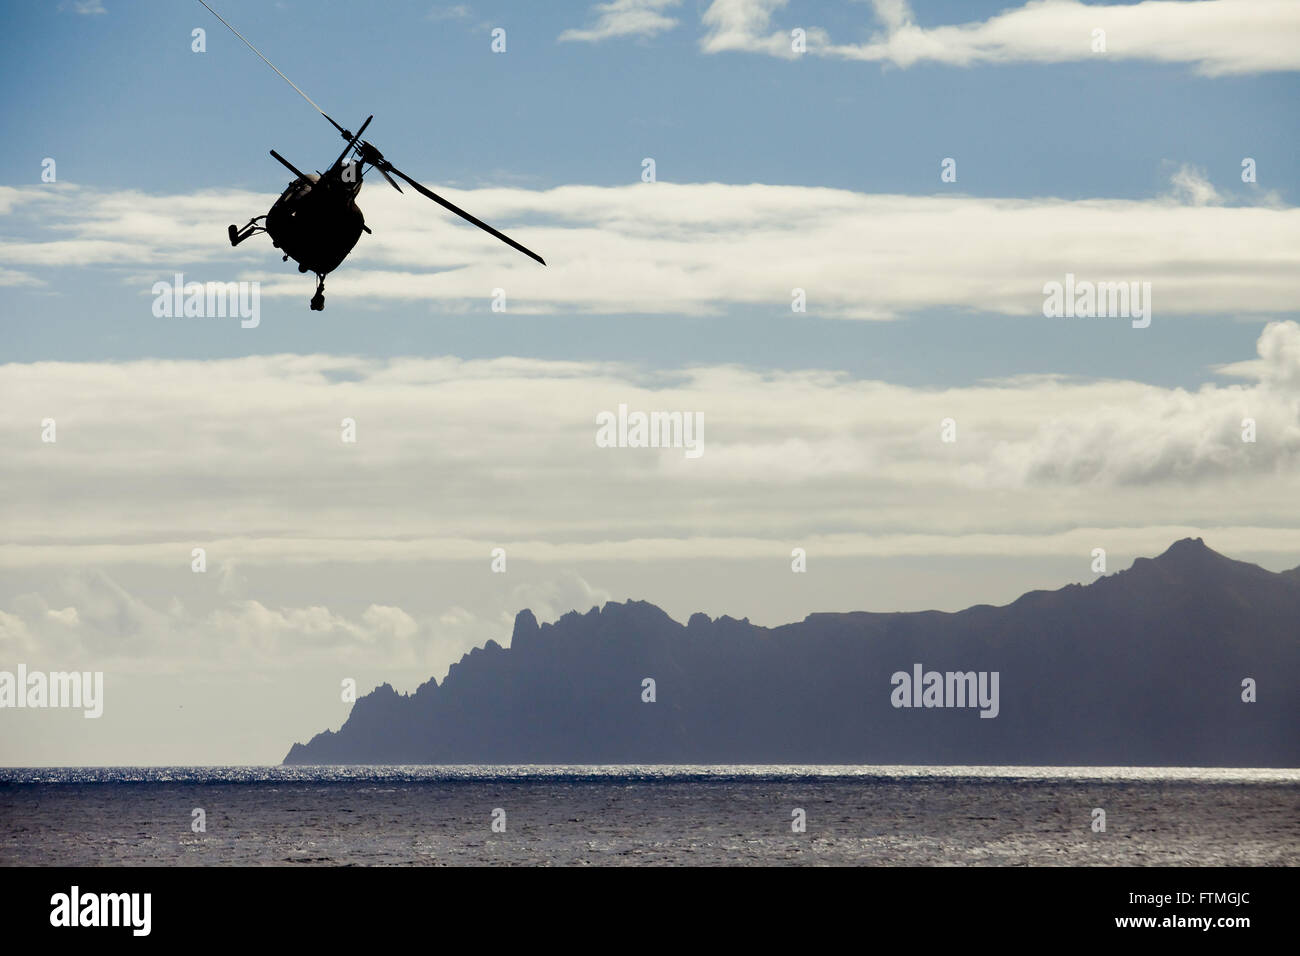 Hélicoptère de la marine brésilienne polatouche Océan Atlantique fin de l'île de Trindade en arrière-plan Banque D'Images